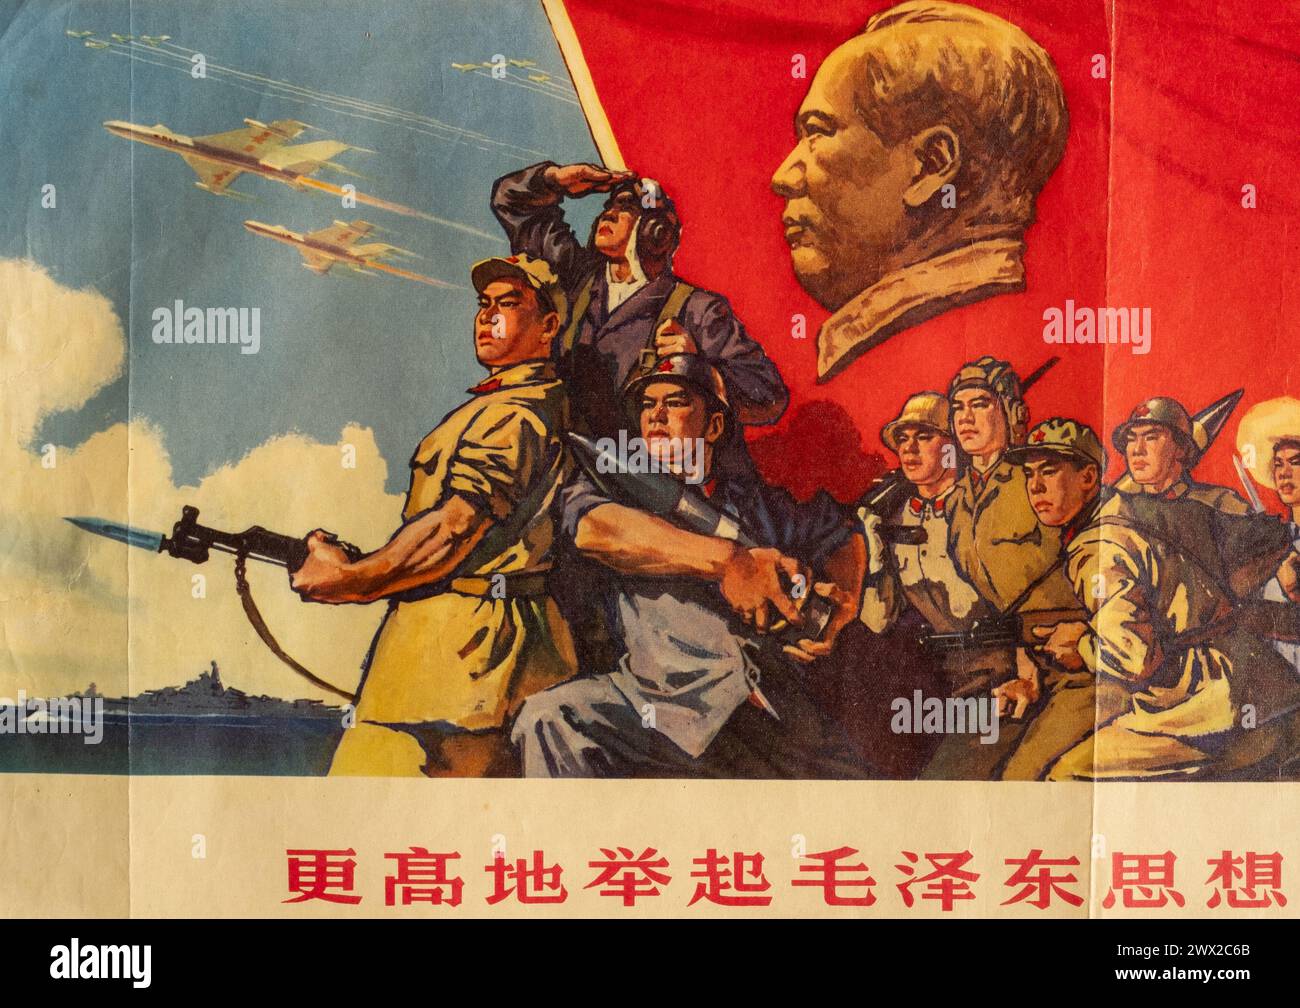 Une affiche de propagande politique (détail) imprimée et distribuée en 1966 au début de la révolution culturelle chinoise. Banque D'Images